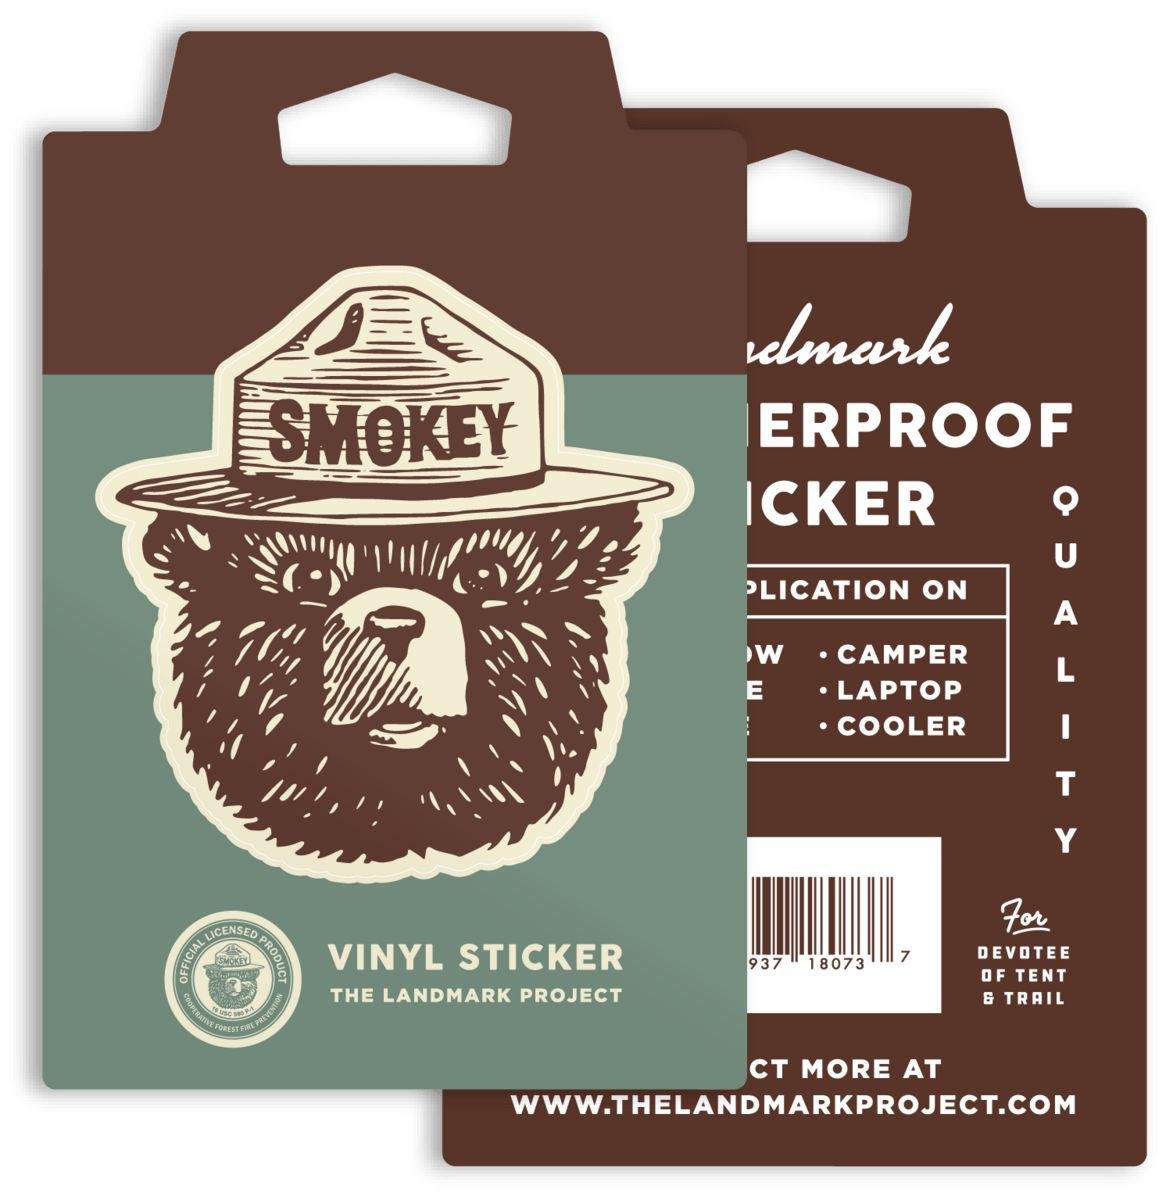 The Landmark Project's Smokey Logo Sticker is waterproof.